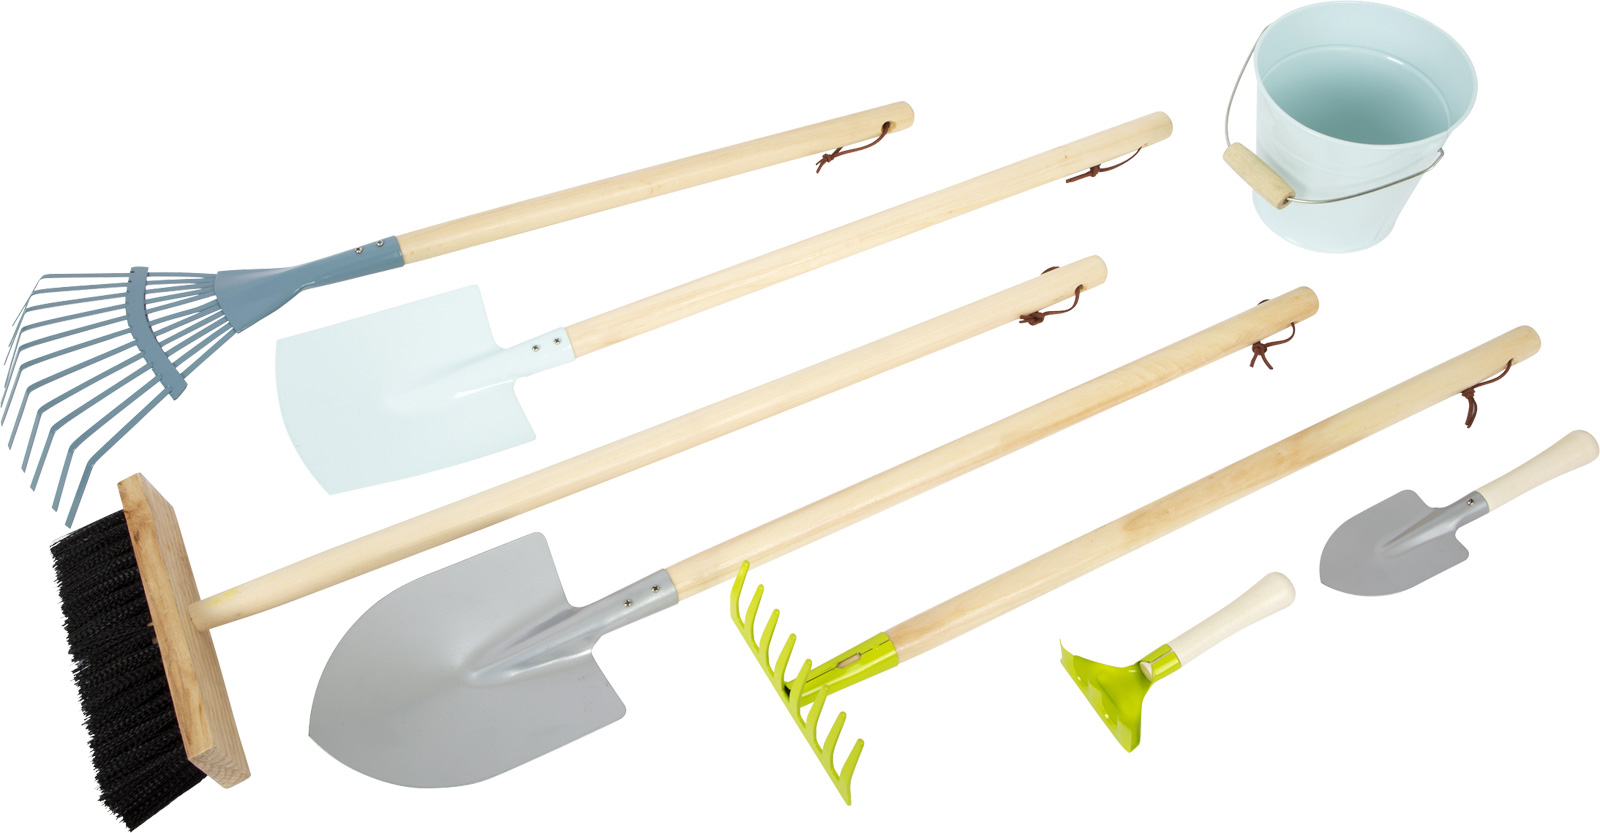 Grand kit de jardin avec brouette ( pour enfants ) - Achat/Vente SMALL FOOT  12014